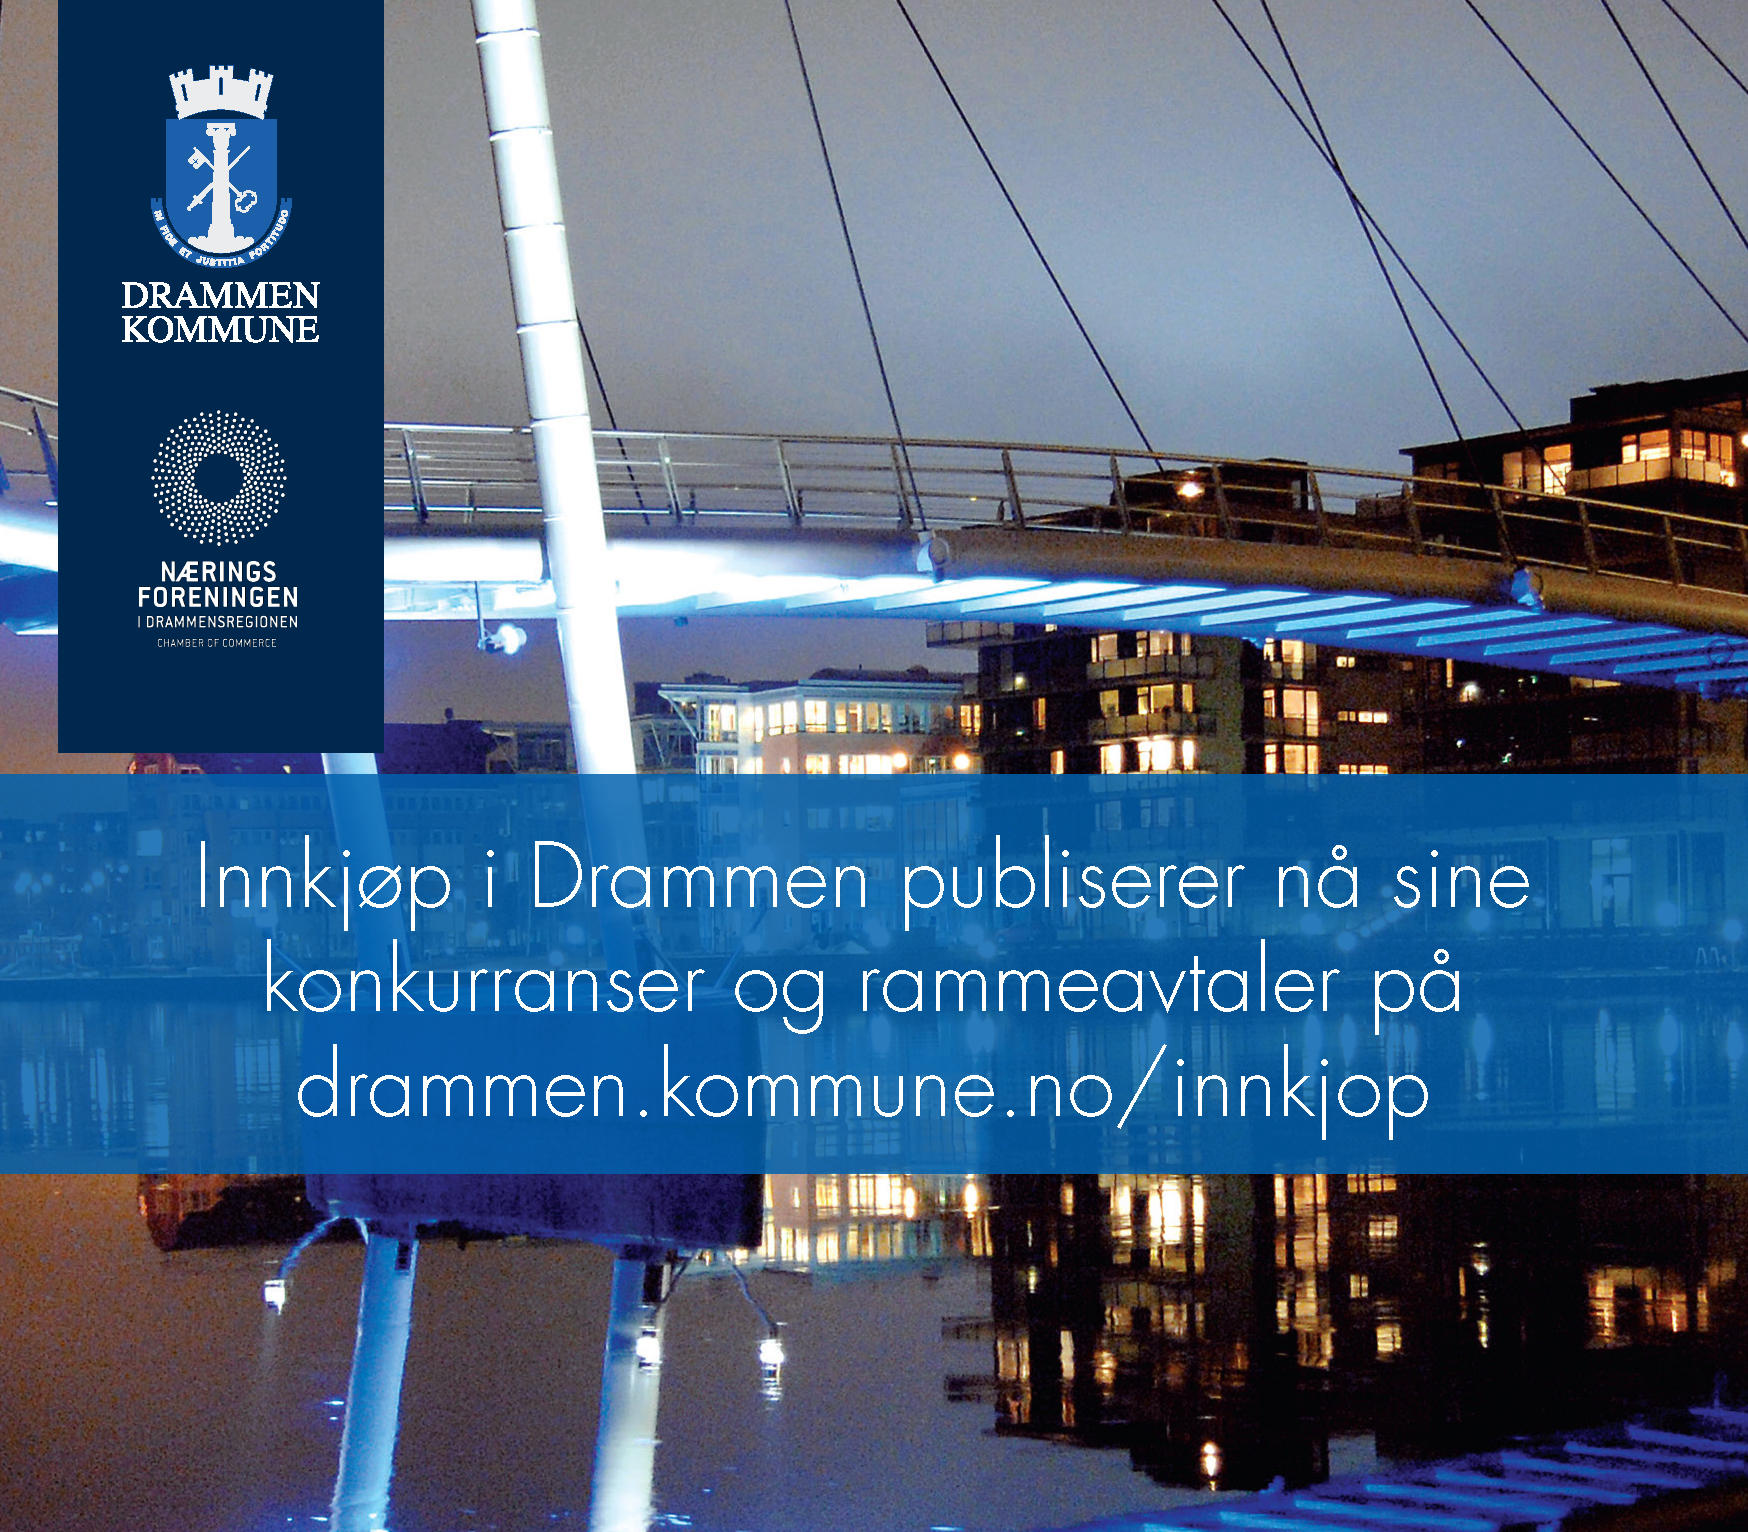 Er du leverandør til Drammen kommune. Eller ønsker du å bli leverandør?